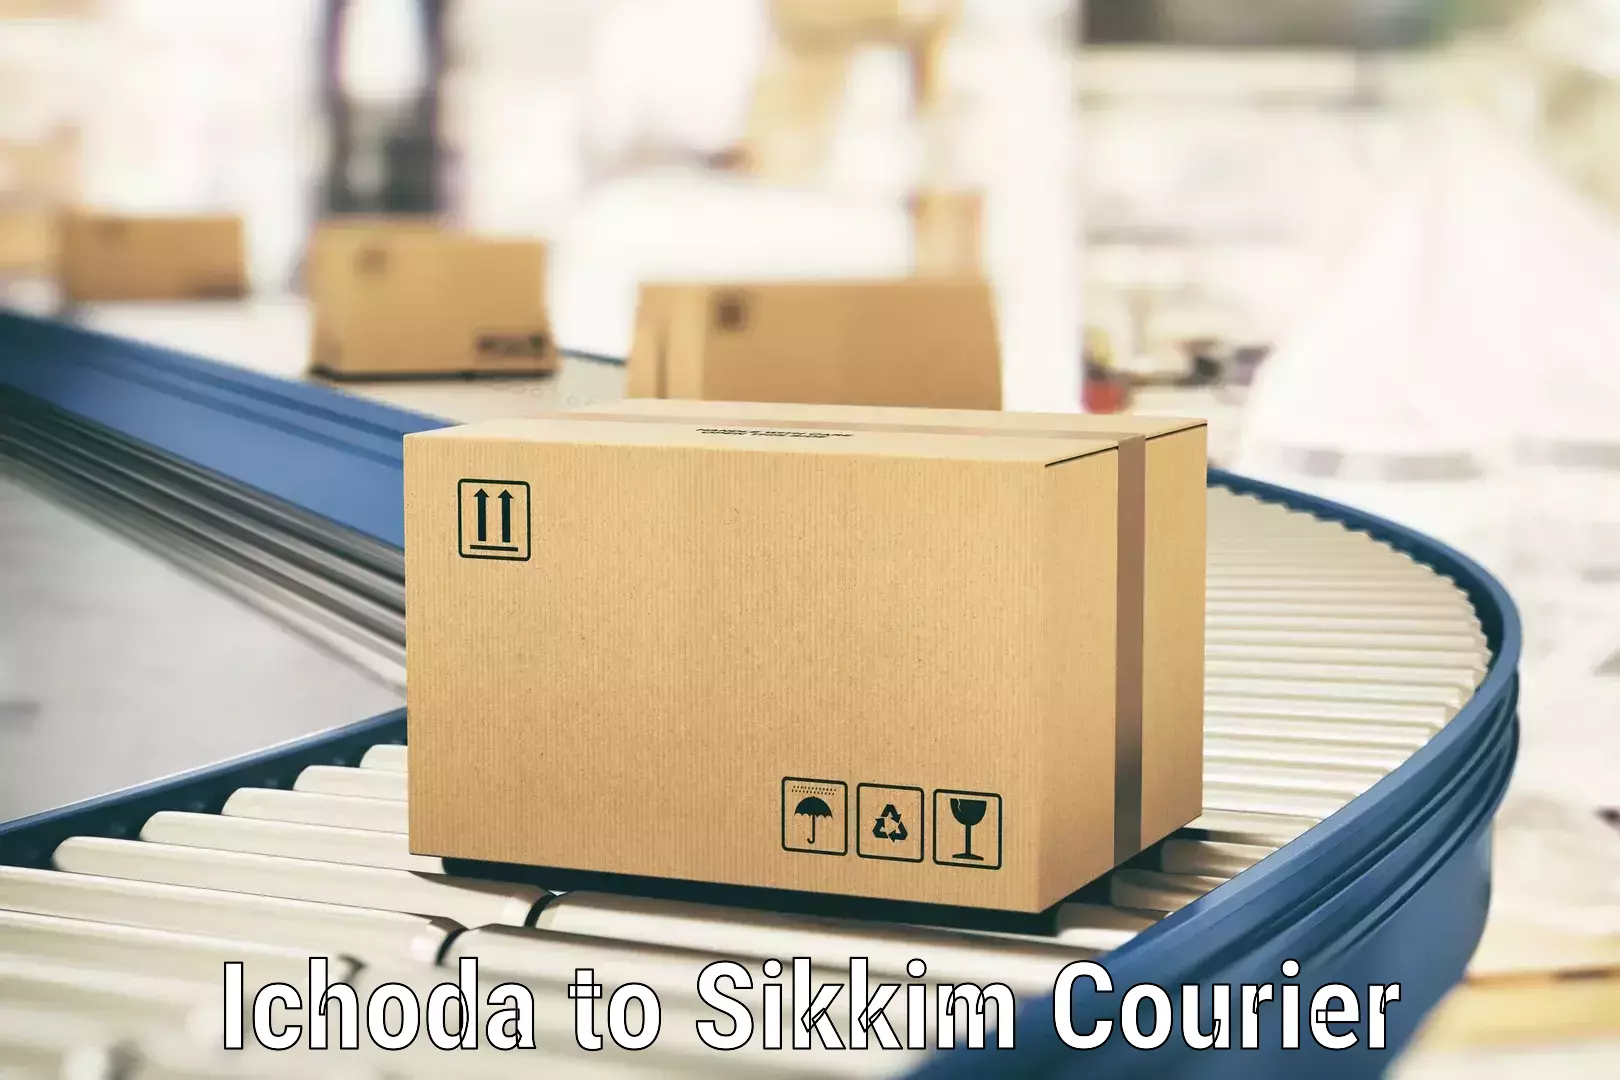 Logistics service provider Ichoda to Sikkim